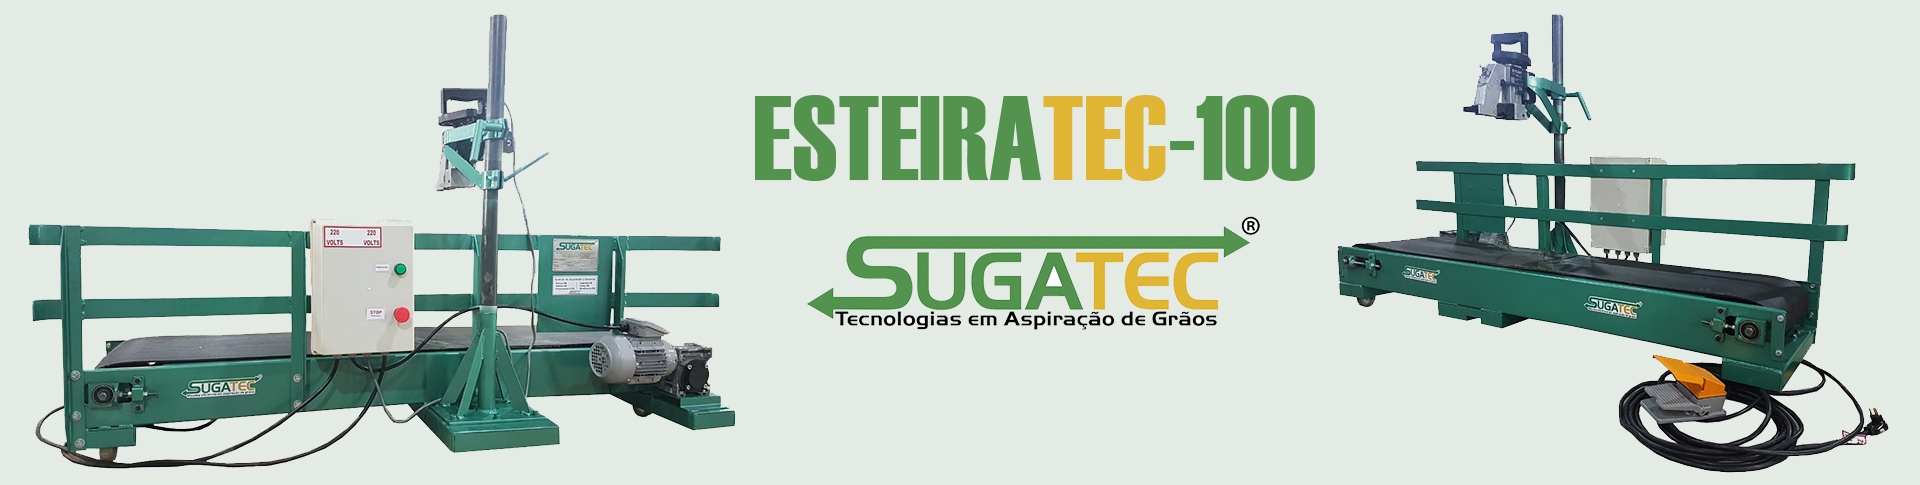 Sugatec - ESTEIRATEC-100